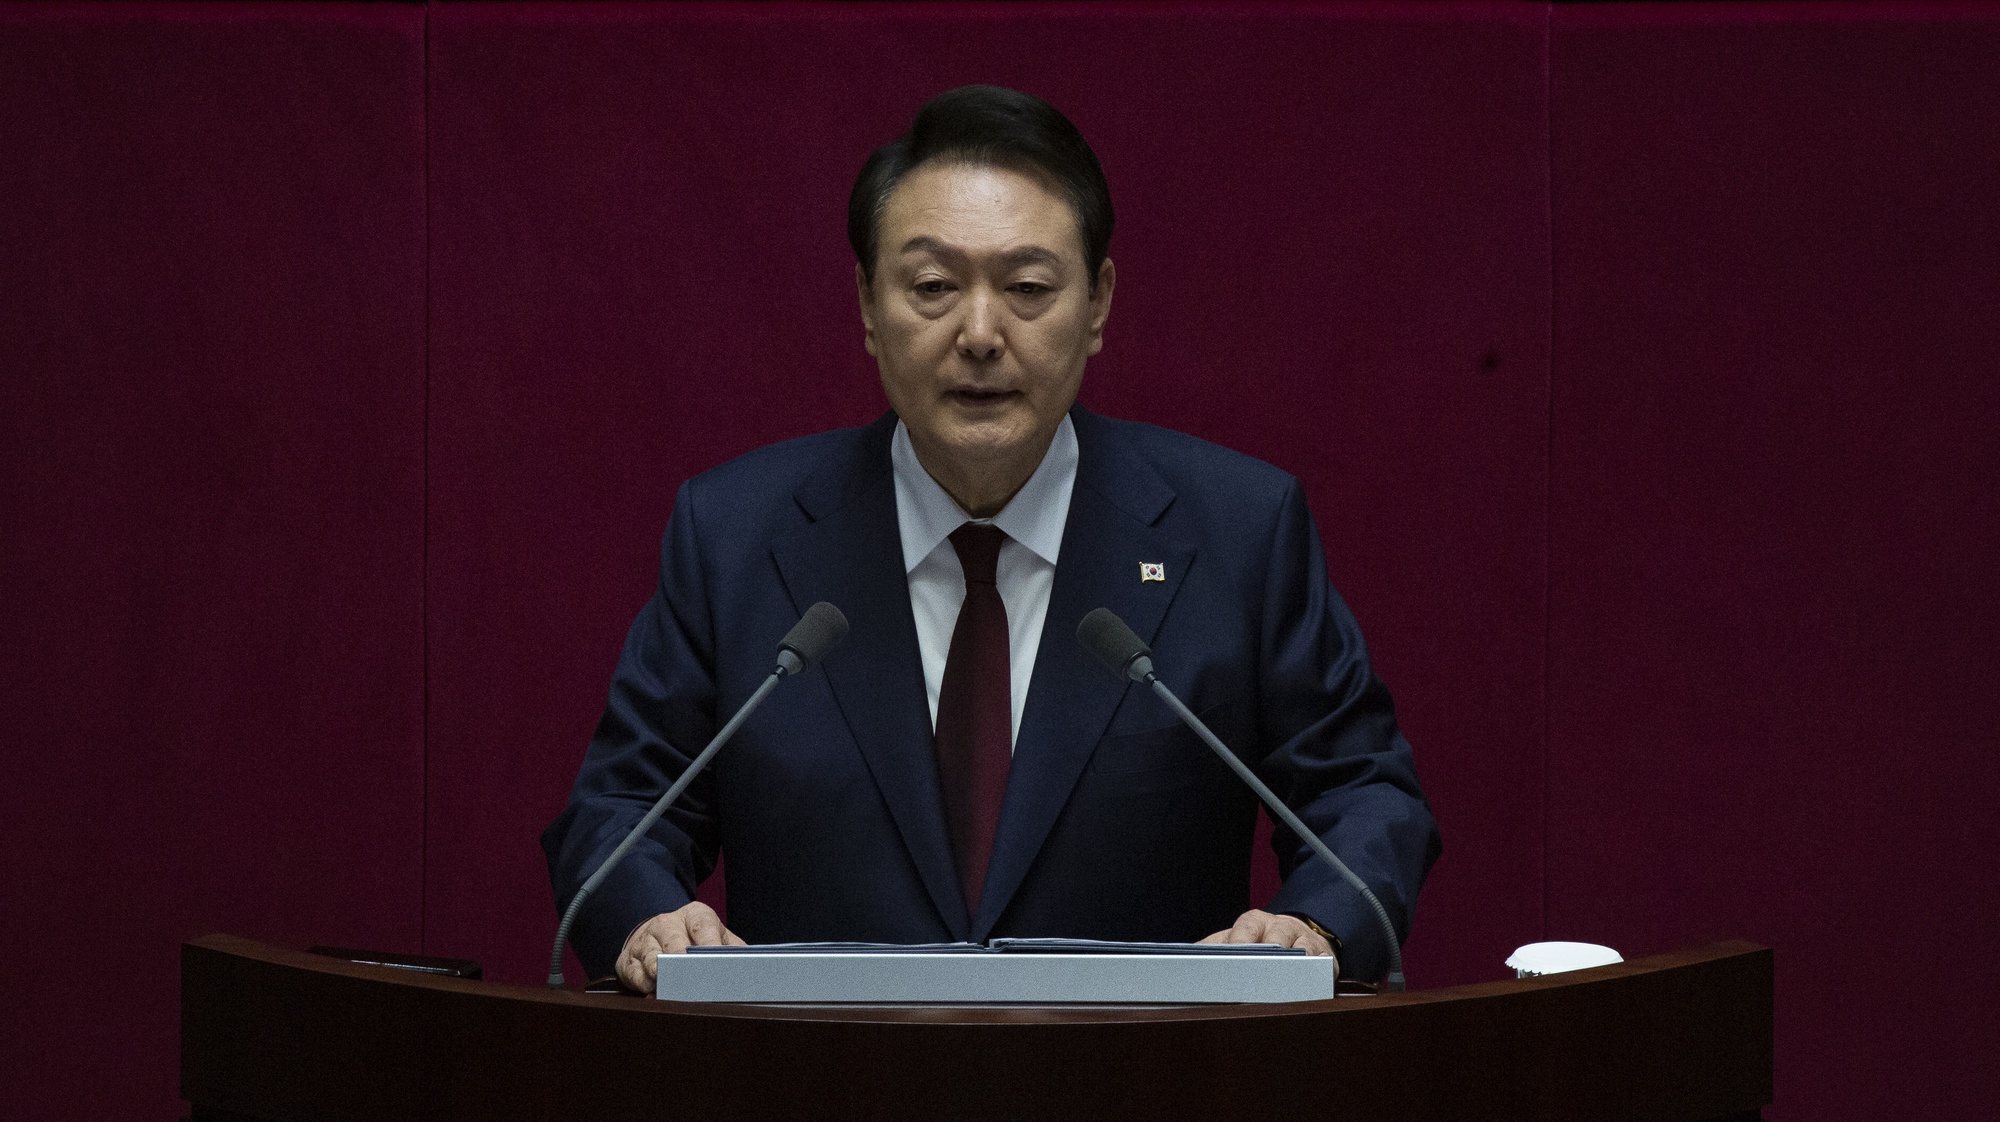 A Coreia do Sul tem um sistema presidencial, em que o Presidente é eleito a cada cinco anos para um mandato único